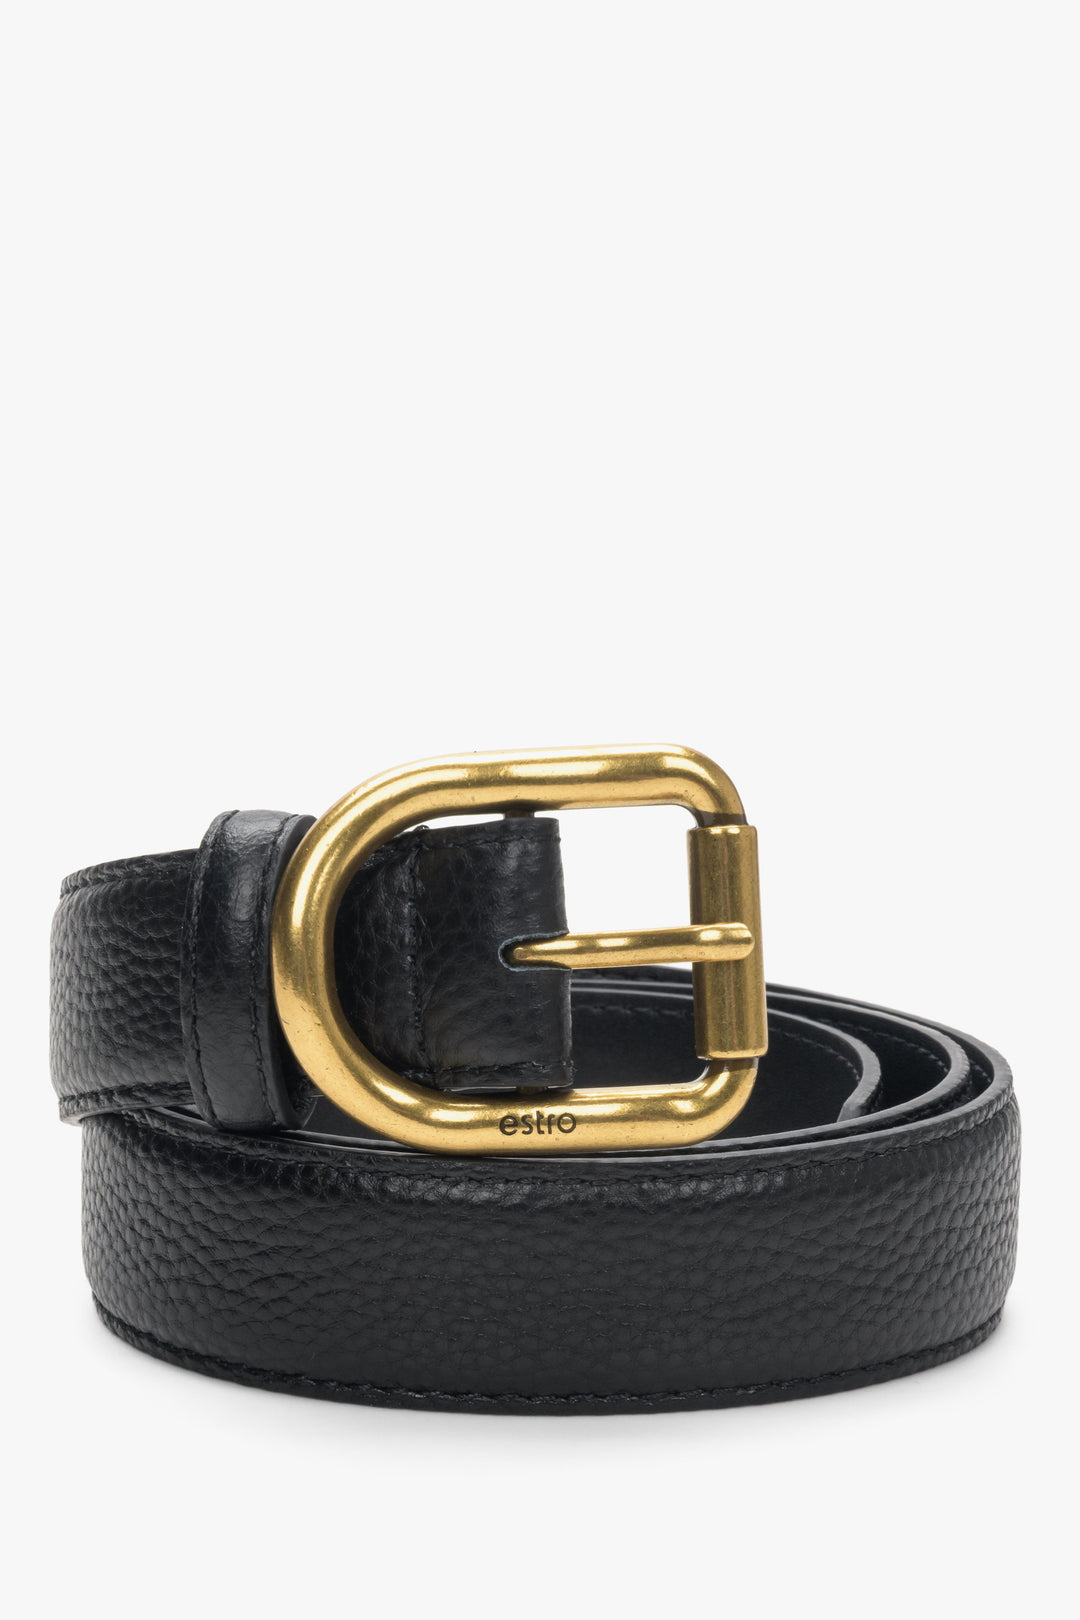 Black women's belt with gold buckle Estro.